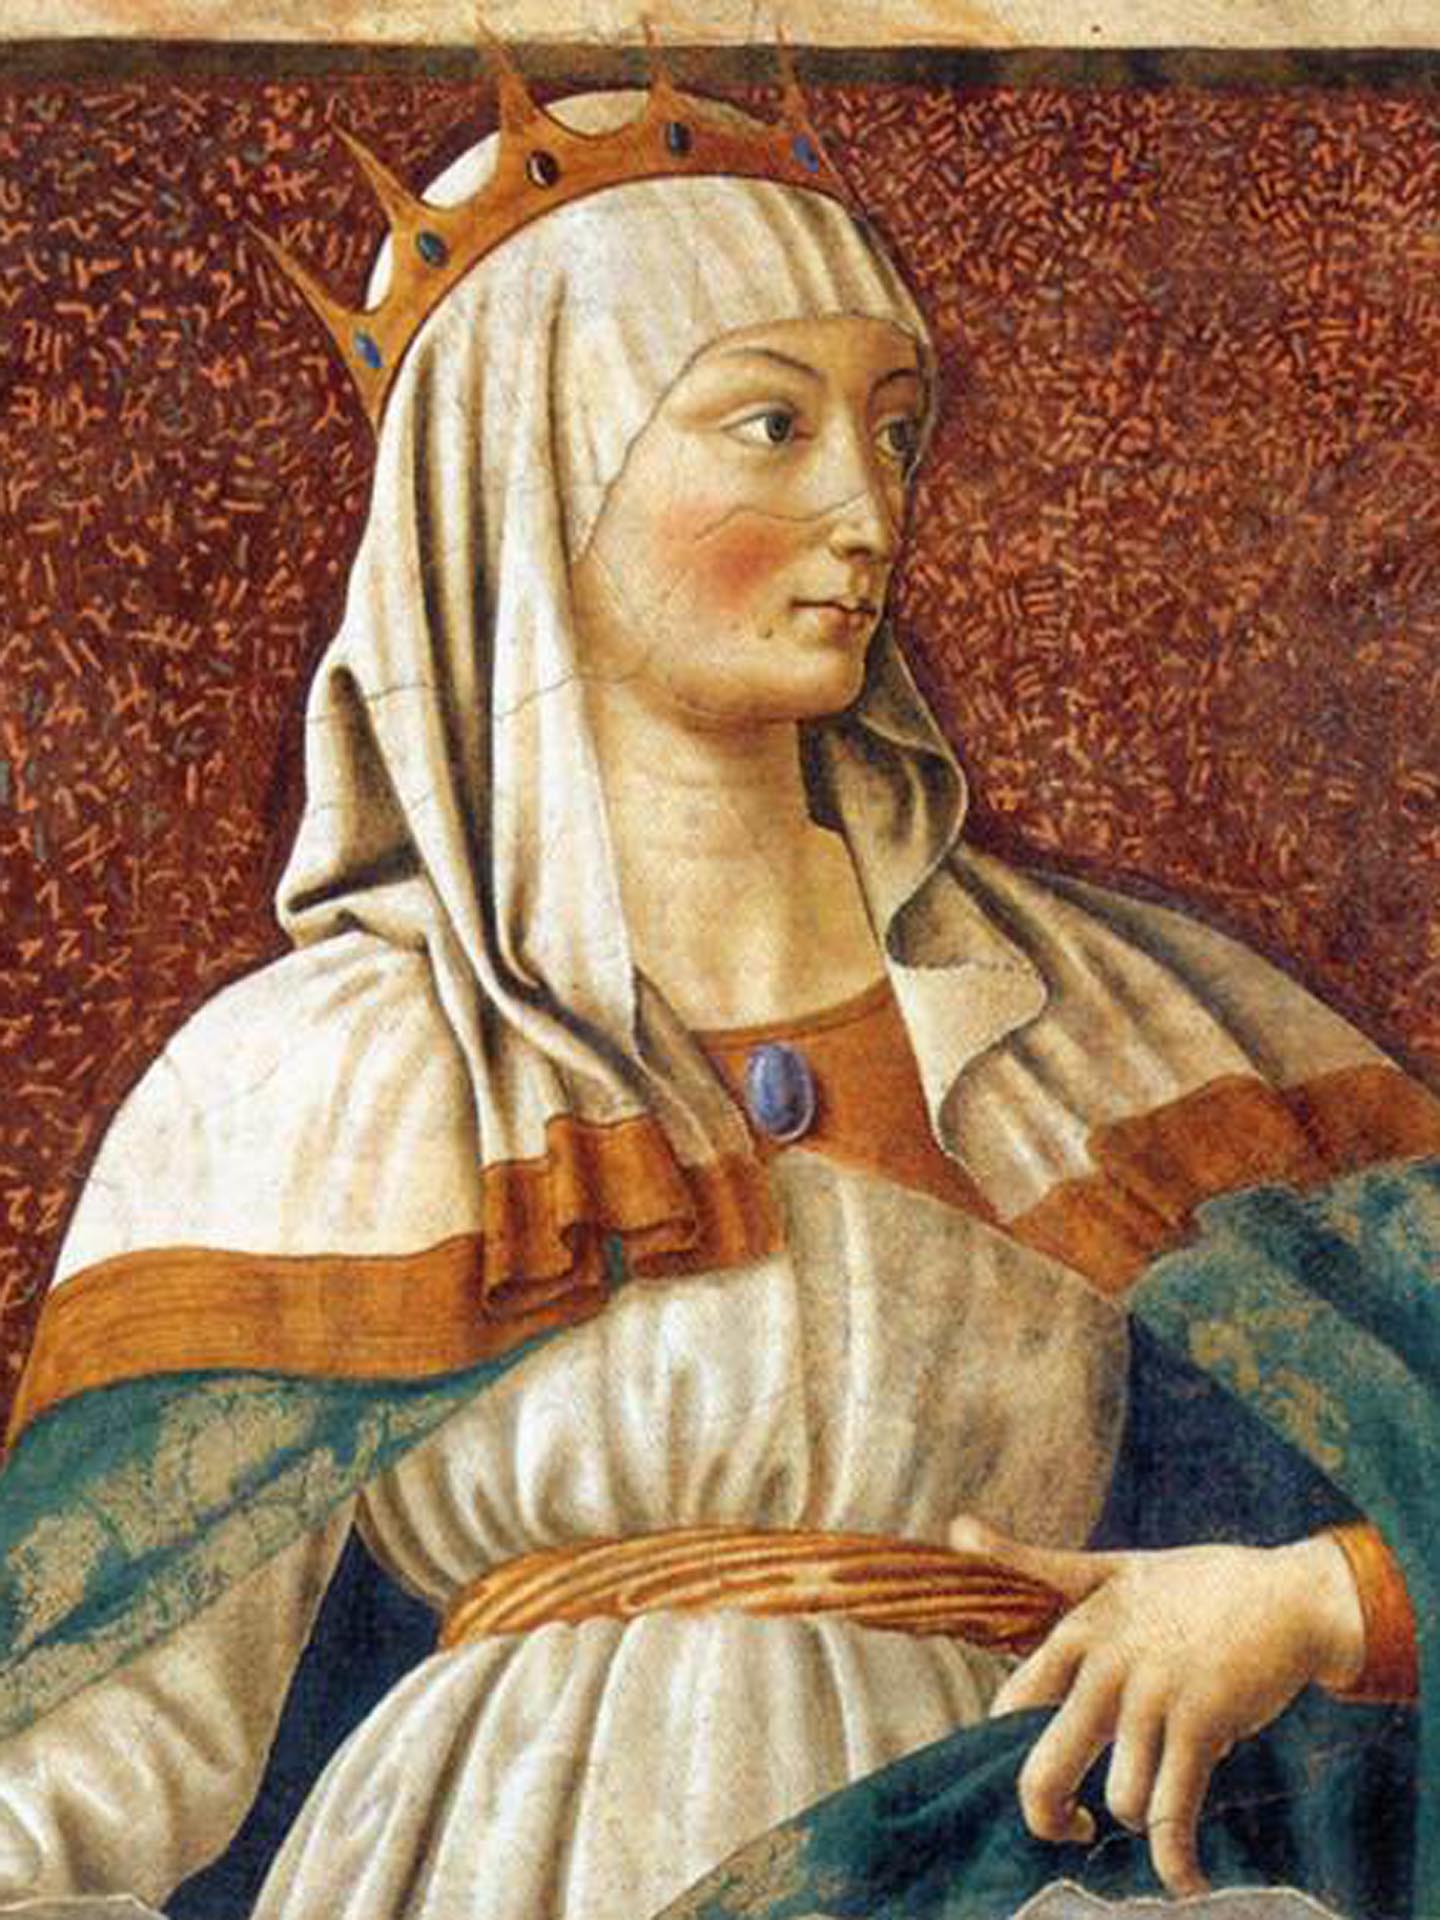 Andrea del Castagno, Queen Esther